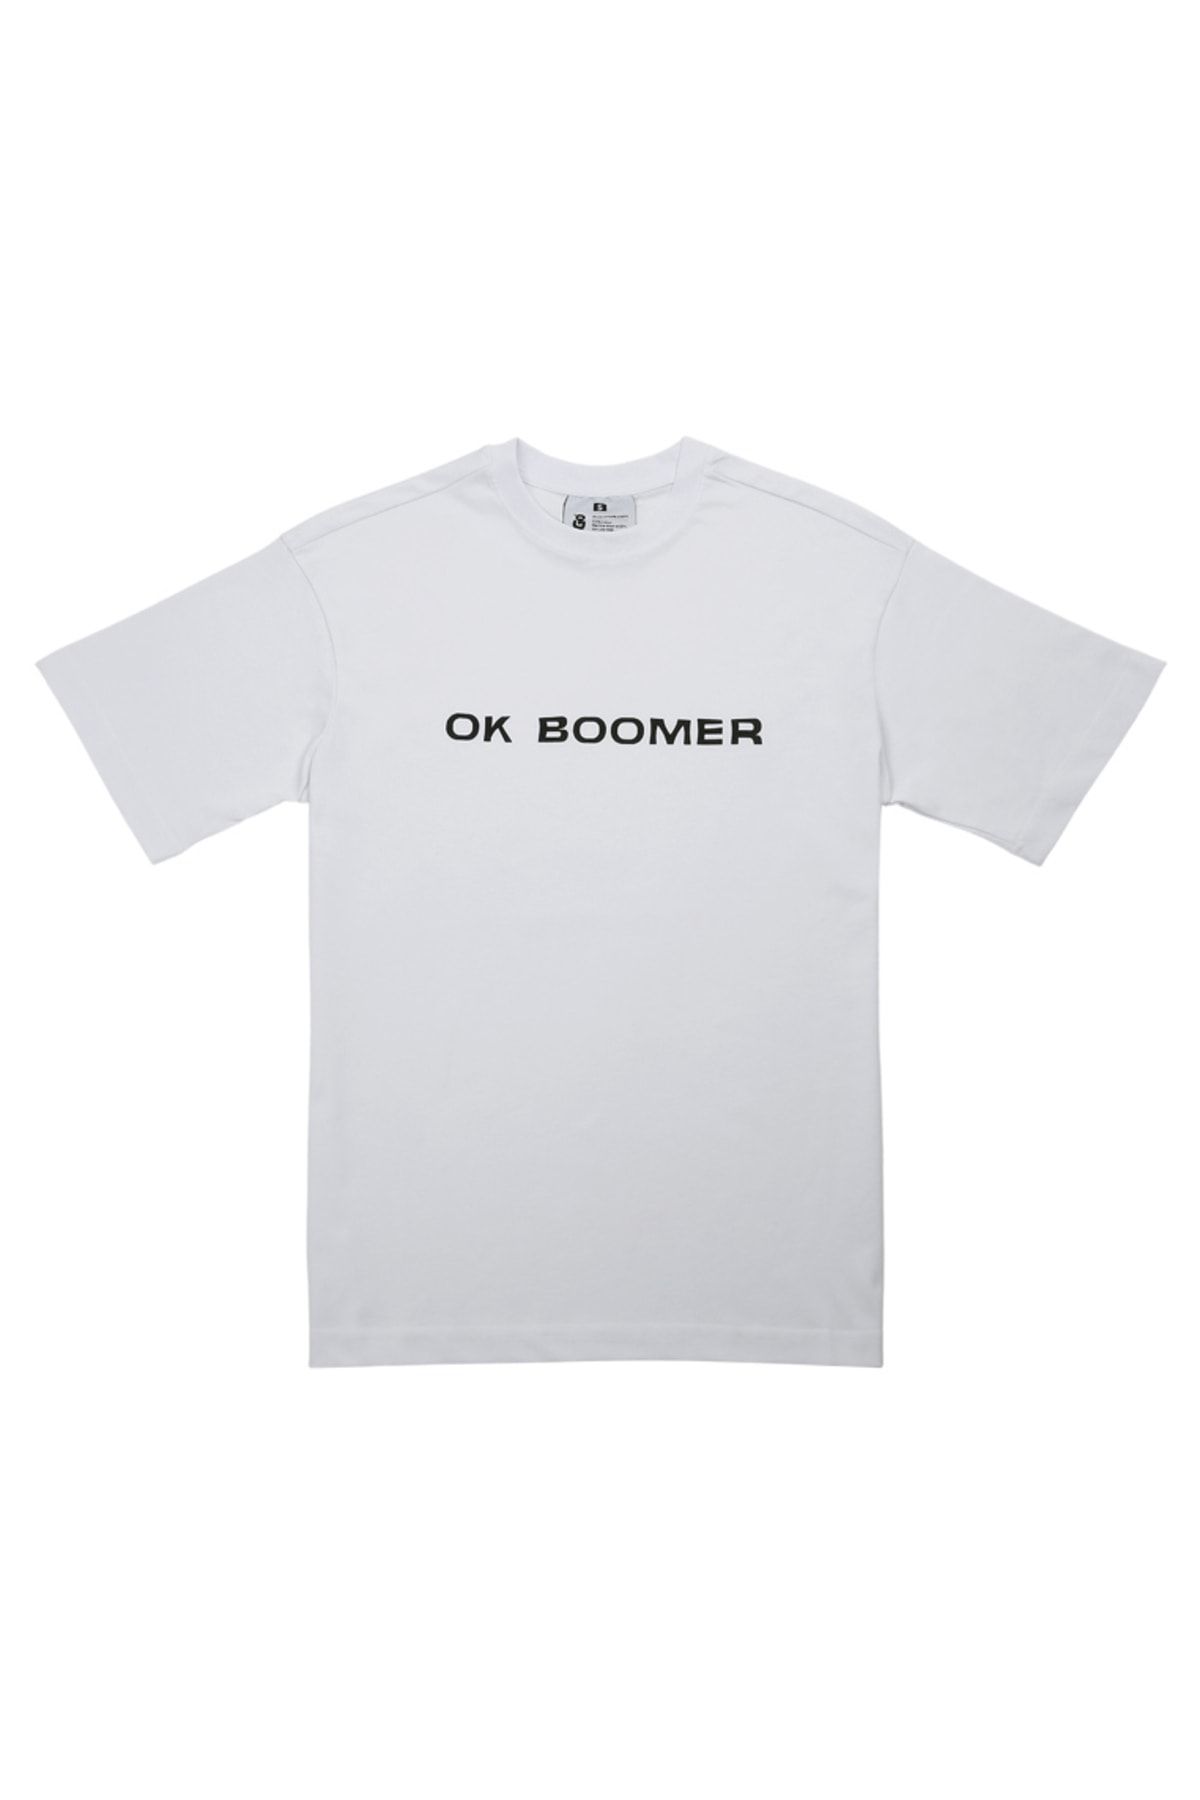 Dogo Unisex Vegan Beyaz T-shirt - Ok Boomer Tasarım